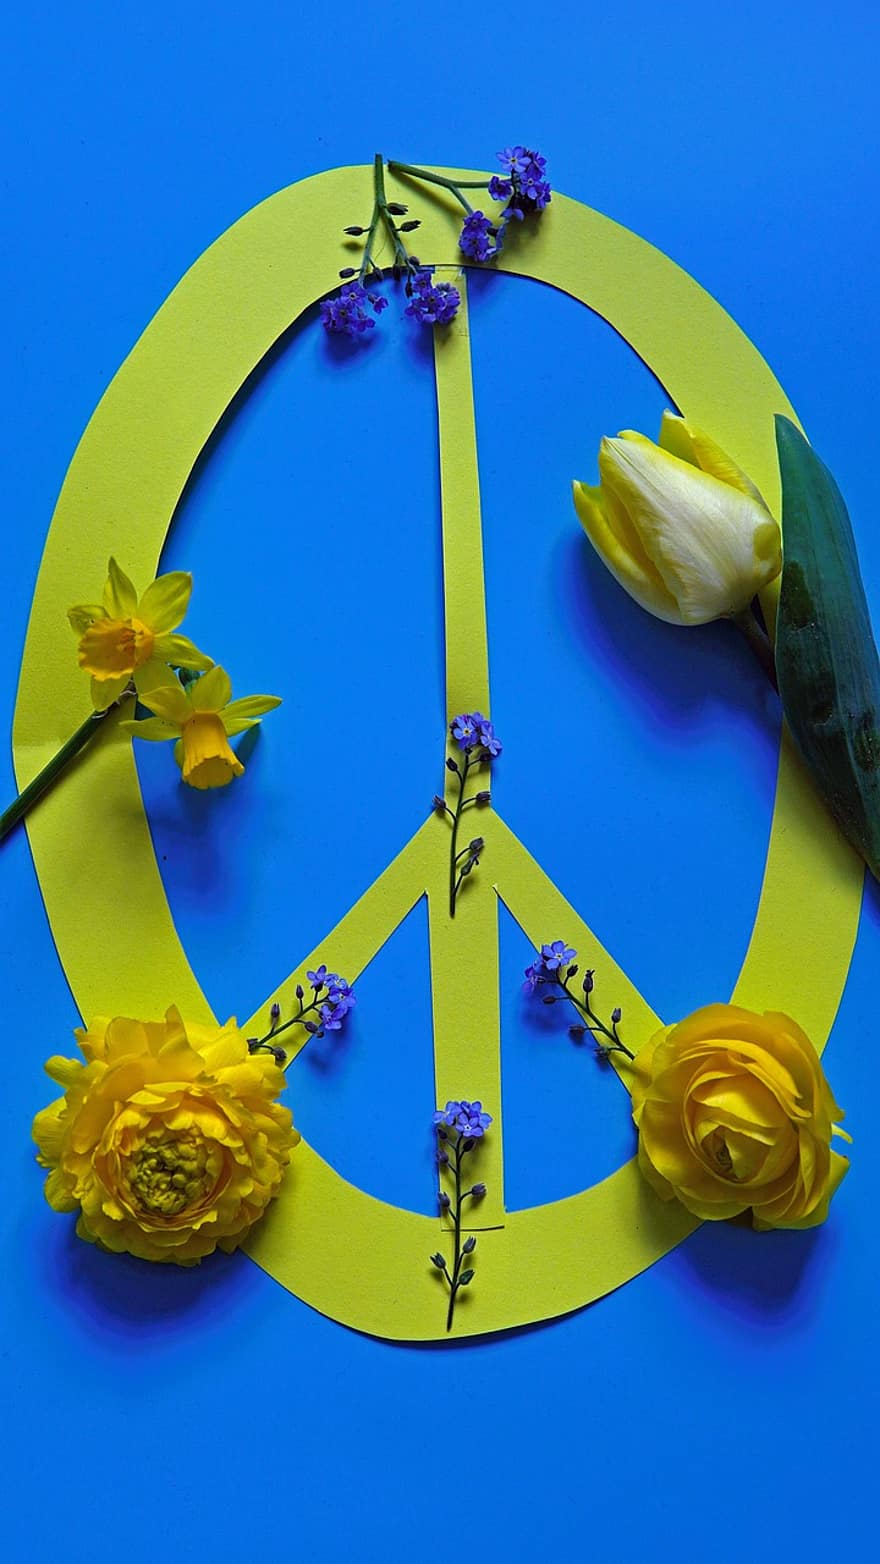 мир, символ миру, Національні кольори України, україна, Кольори України, знак миру, мир у всьому світі, жовті квіти, квітка, лист, жовтий